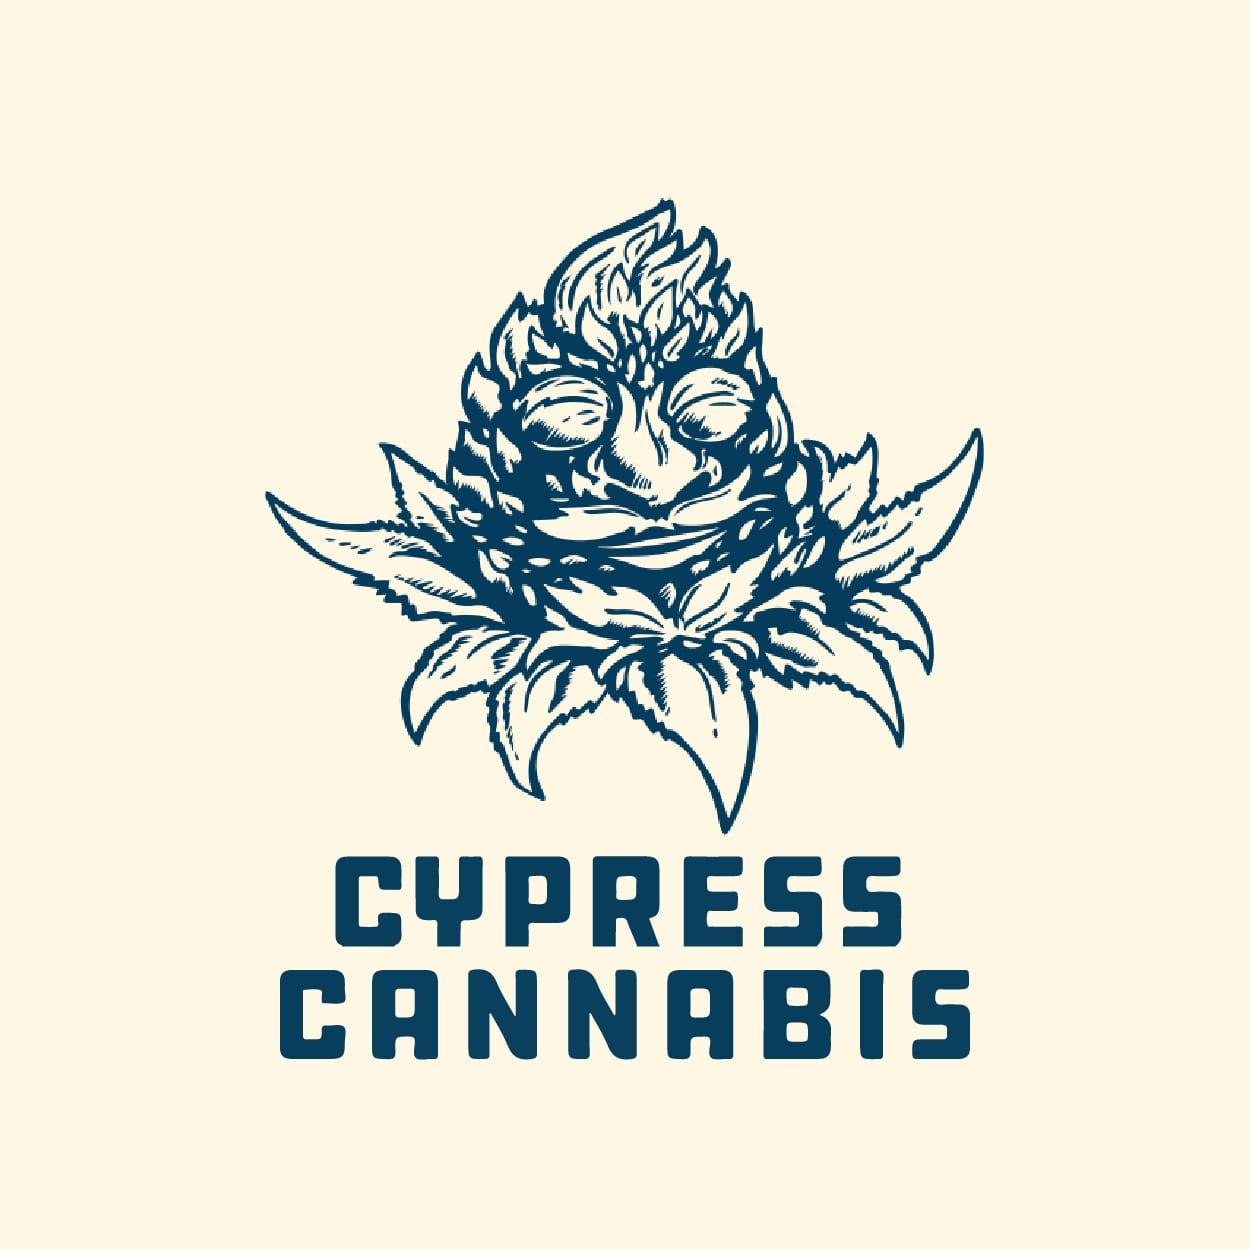 Cypress Cannabis near me